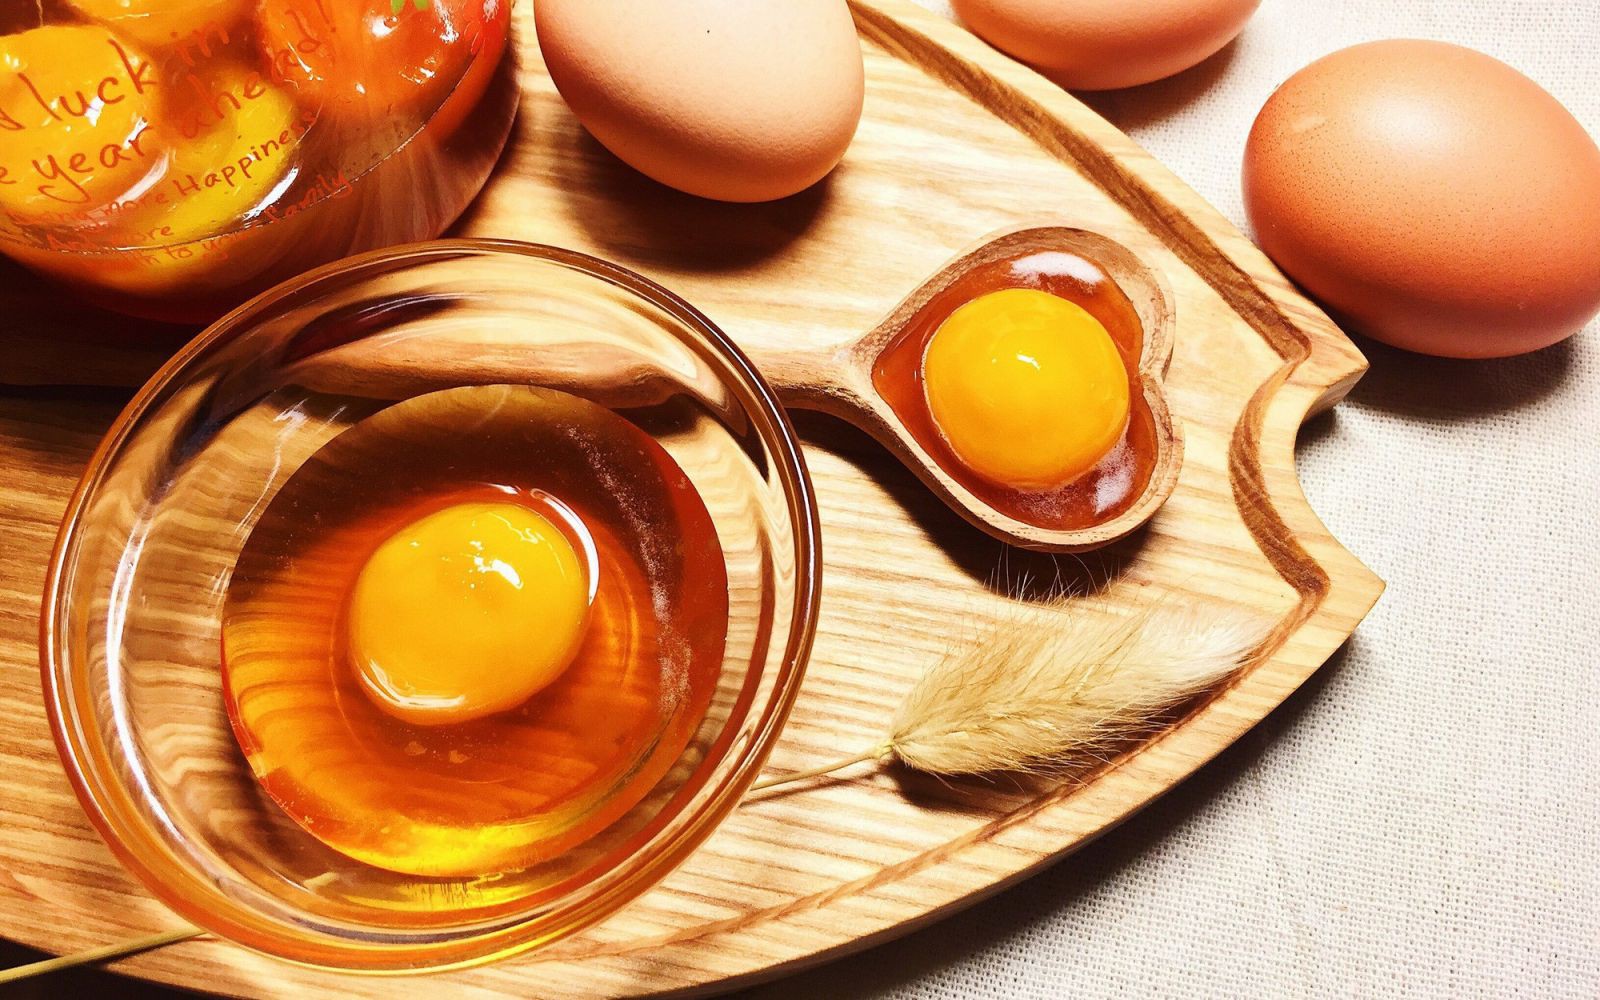 Lòng đỏ trứng là nguồn dinh dưỡng dồi dào, vậy nên đừng bỏ phí nhé